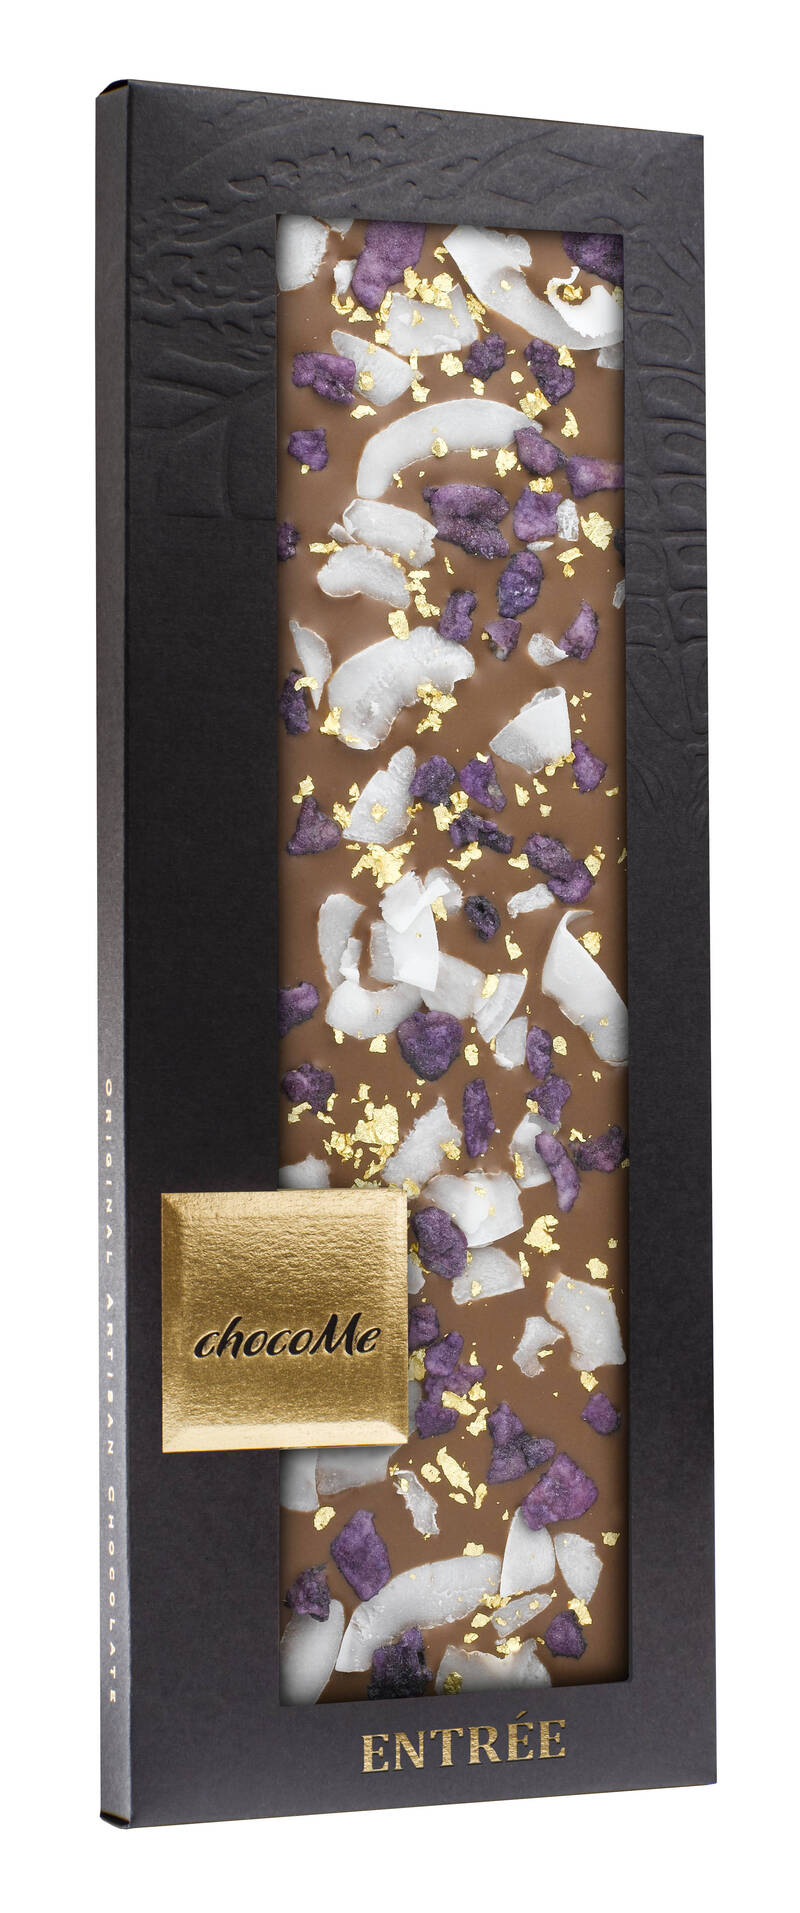 ChocoMe -choklad - Entrée - 110 g. (7 alternativ)